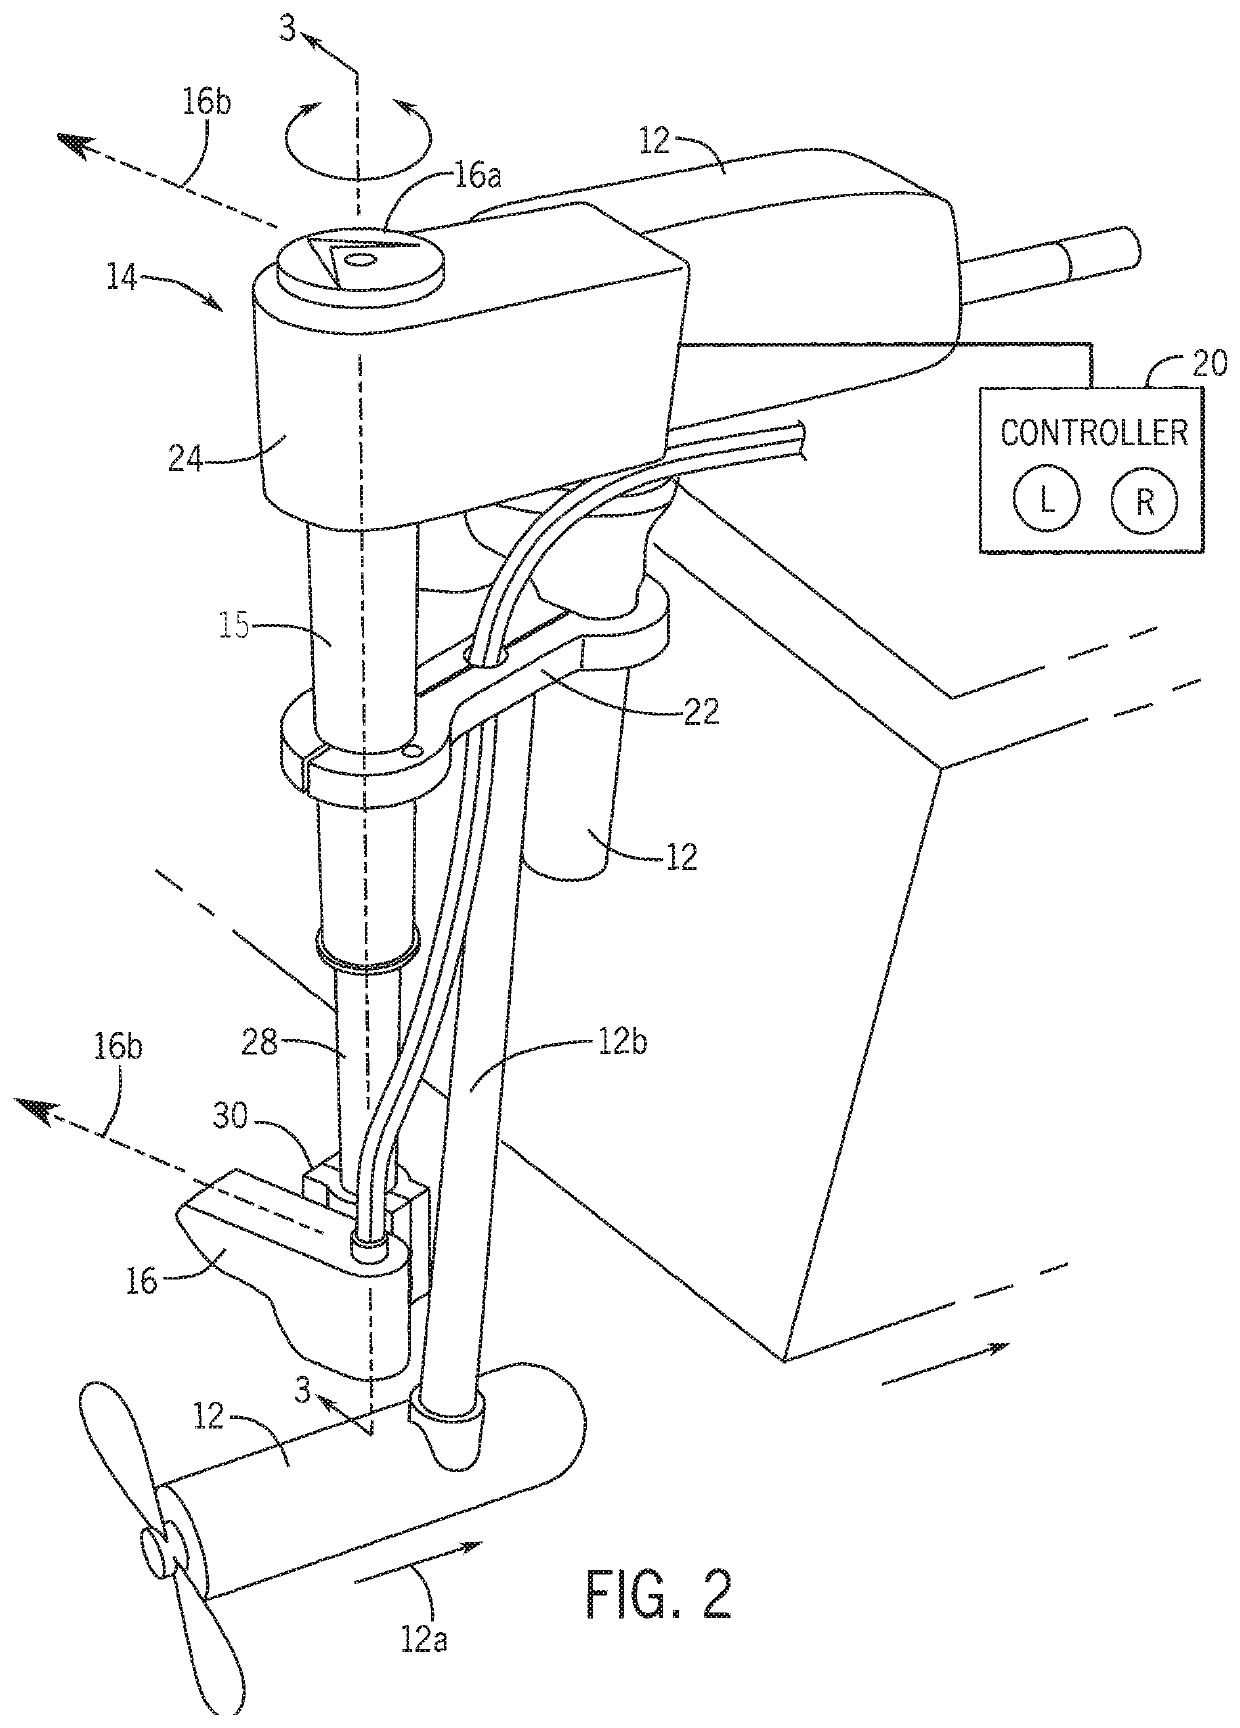 Motorized rotating transducer mount